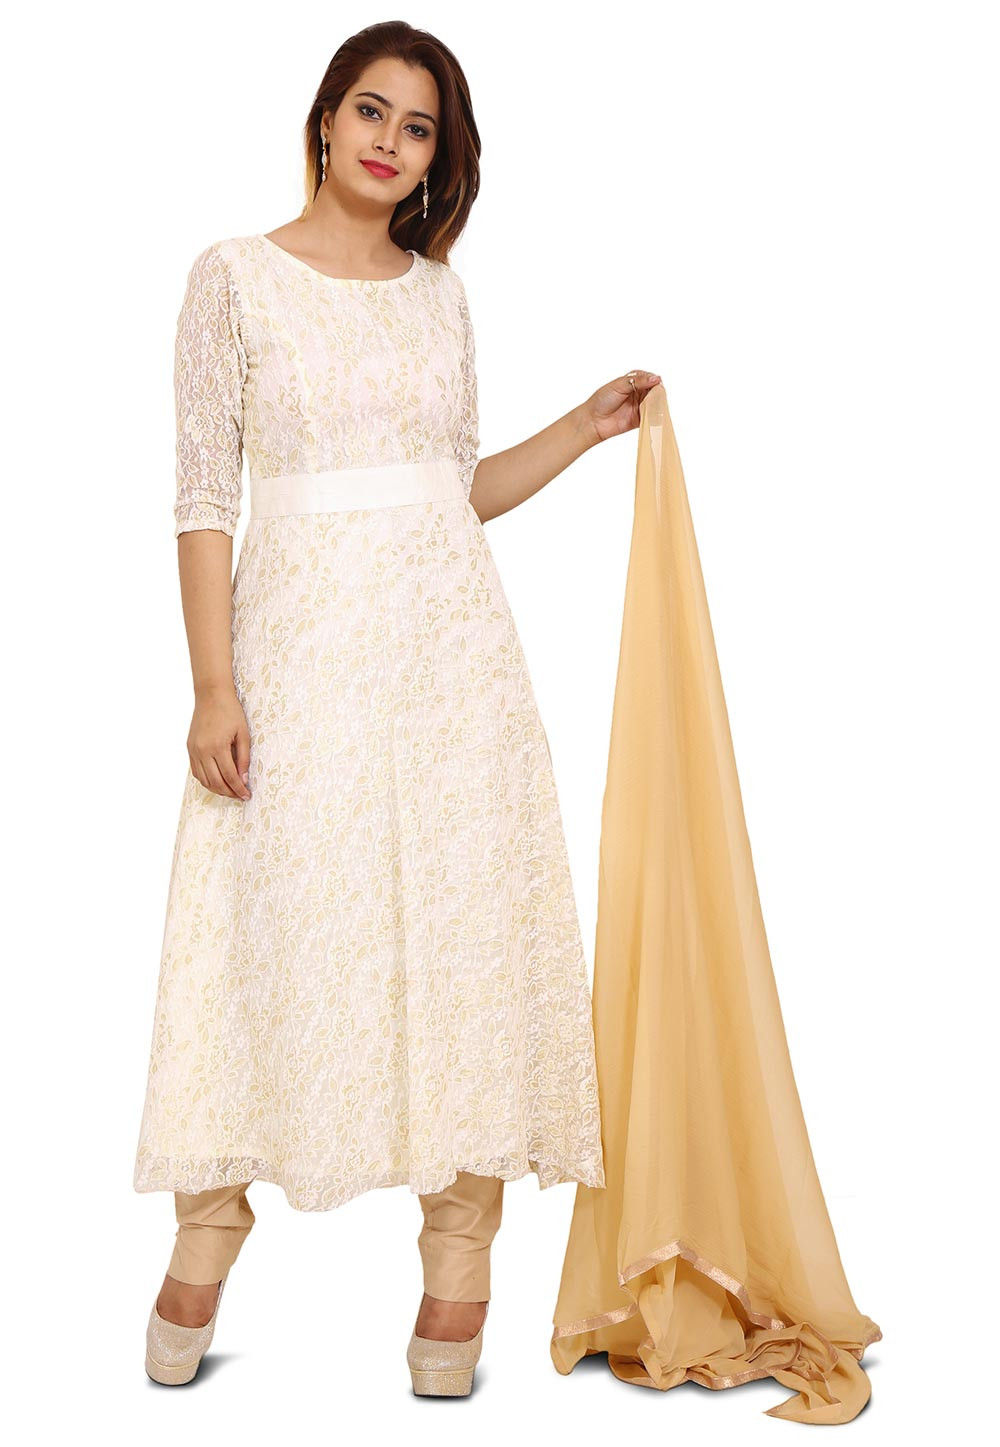 Woven Chantelle Net Anarkali Style Suit in Off White : KJN3075